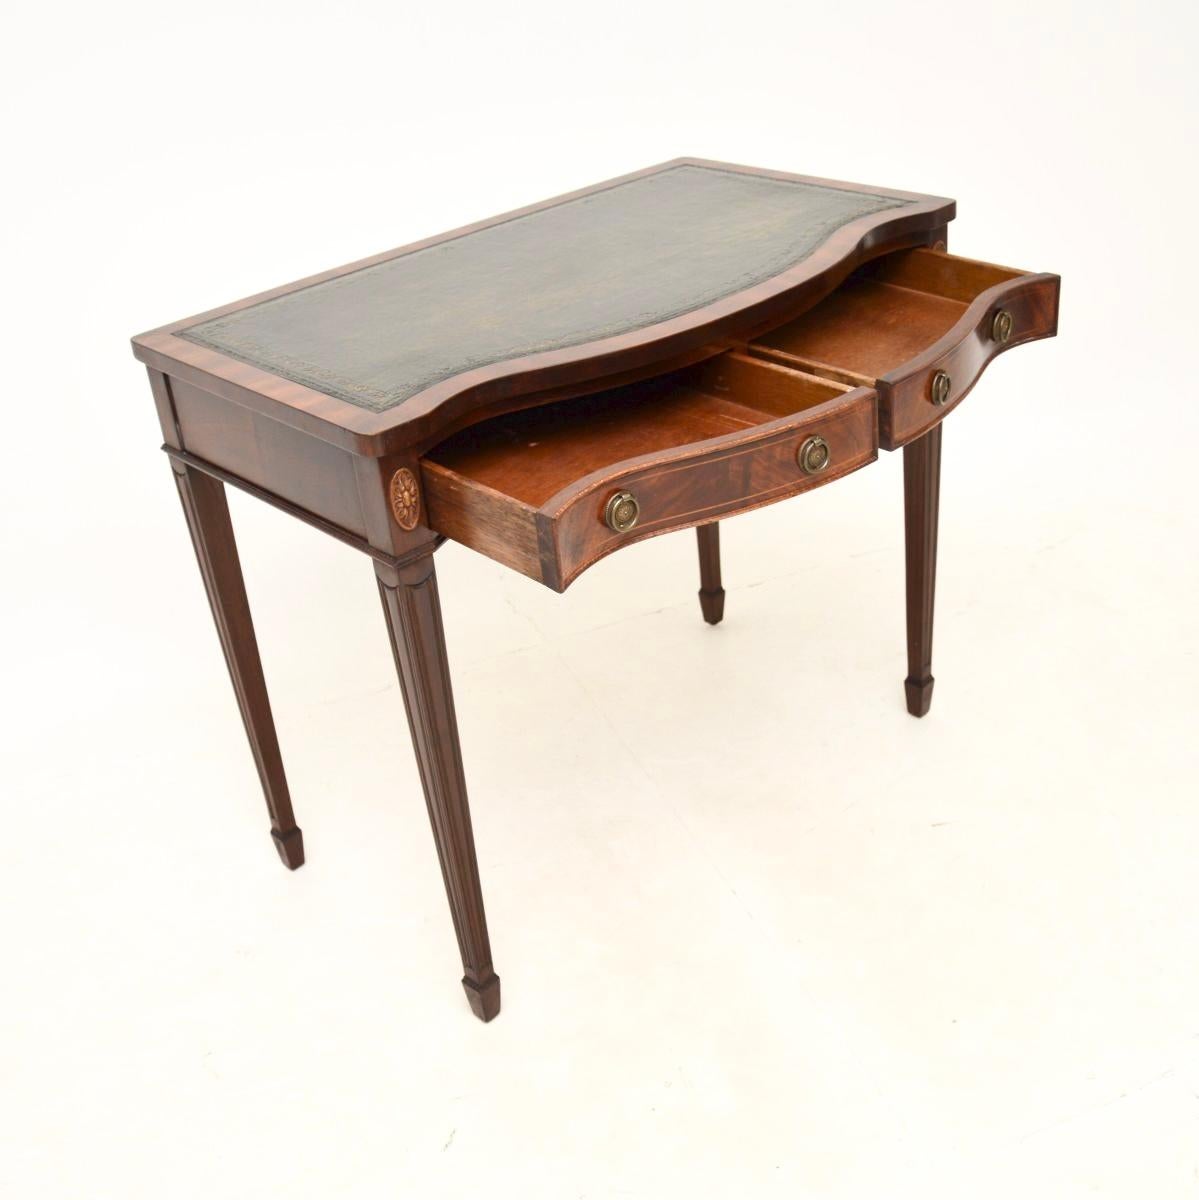 Un bureau / table console en cuir ancien, élégant et utile. Fabriqué en Angleterre, il est de style géorgien et date des années 1950.

La qualité est superbe et la taille est très pratique, parfaite pour être utilisée comme bureau ou comme table